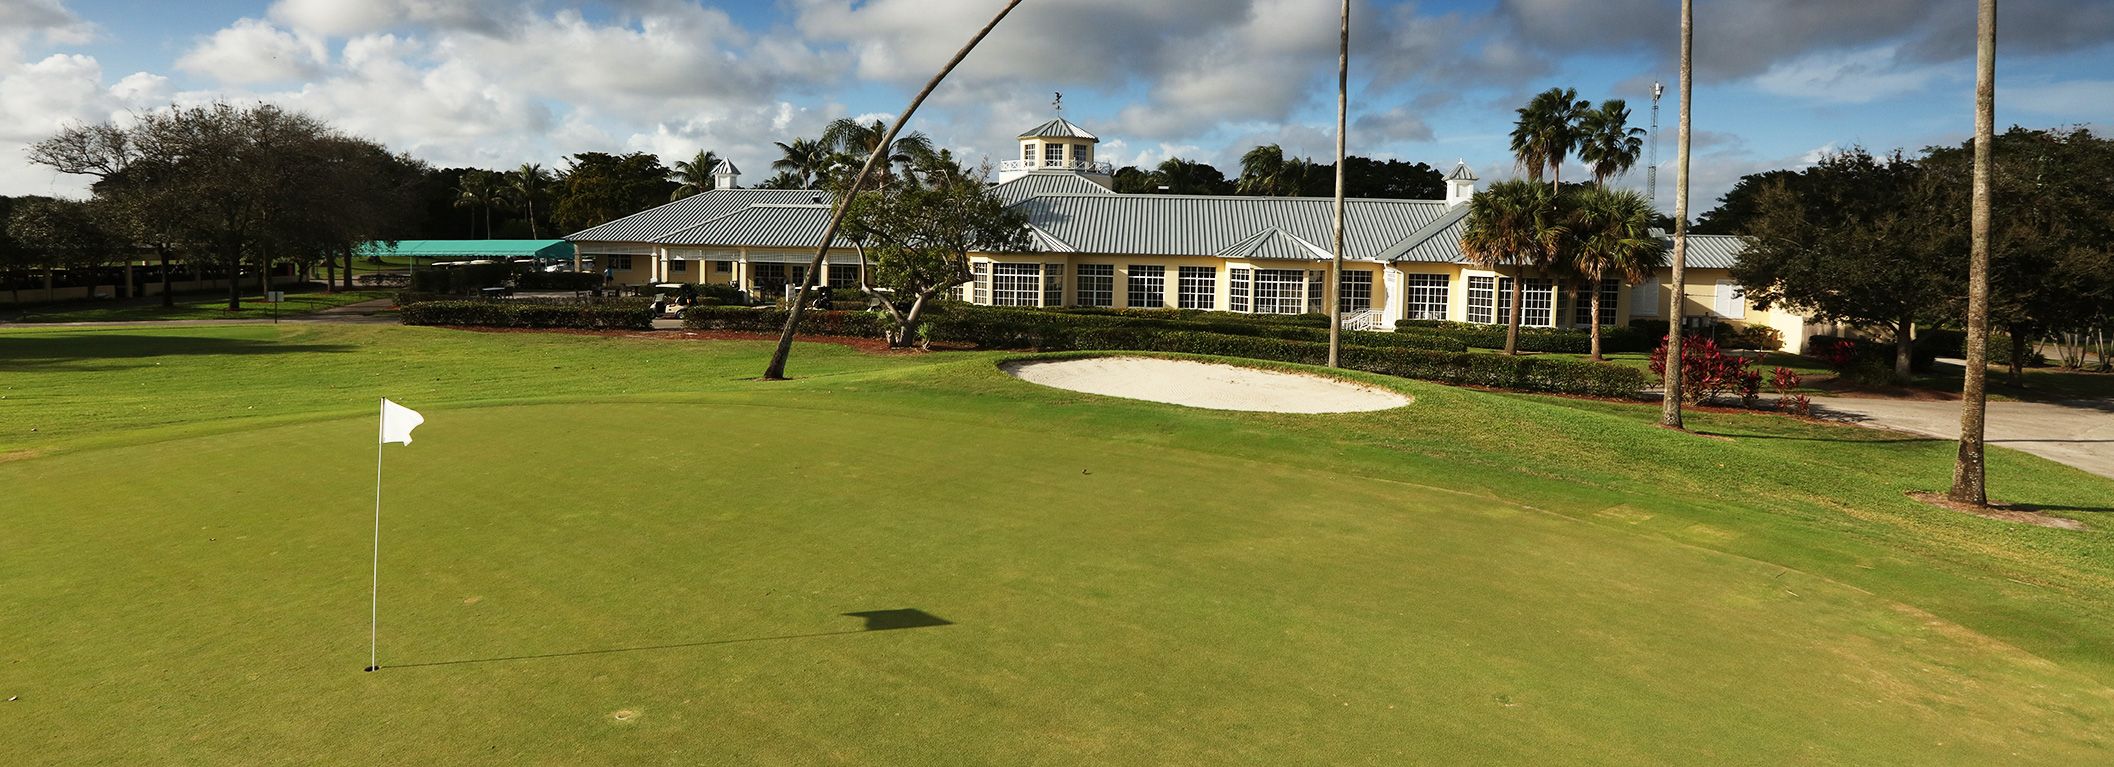 Delray Beach Golf Club, Delray Beach, Florida - Golf course information